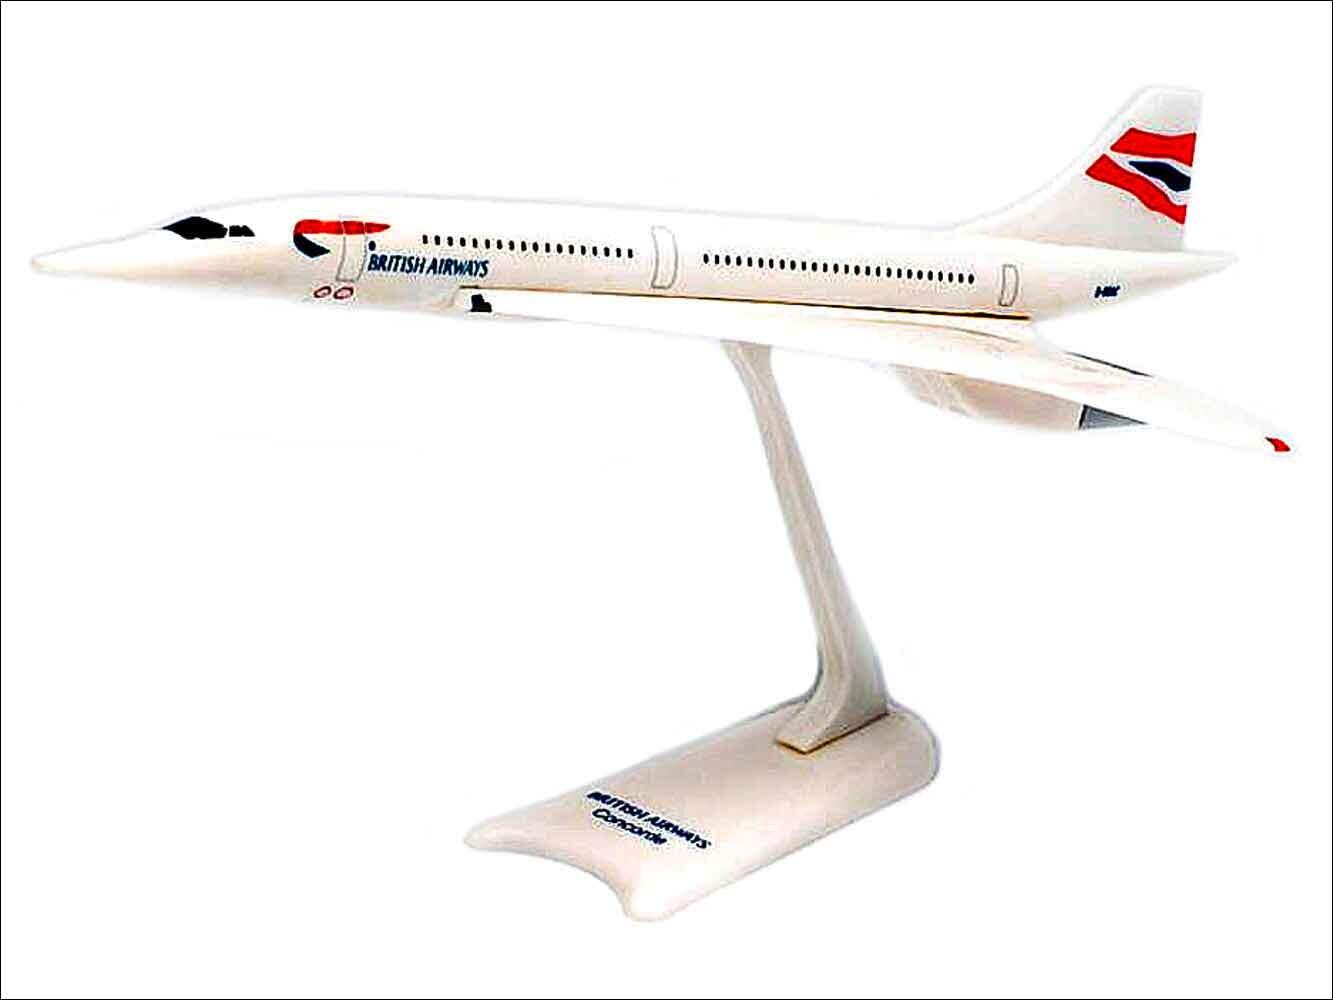 BA Concorde model